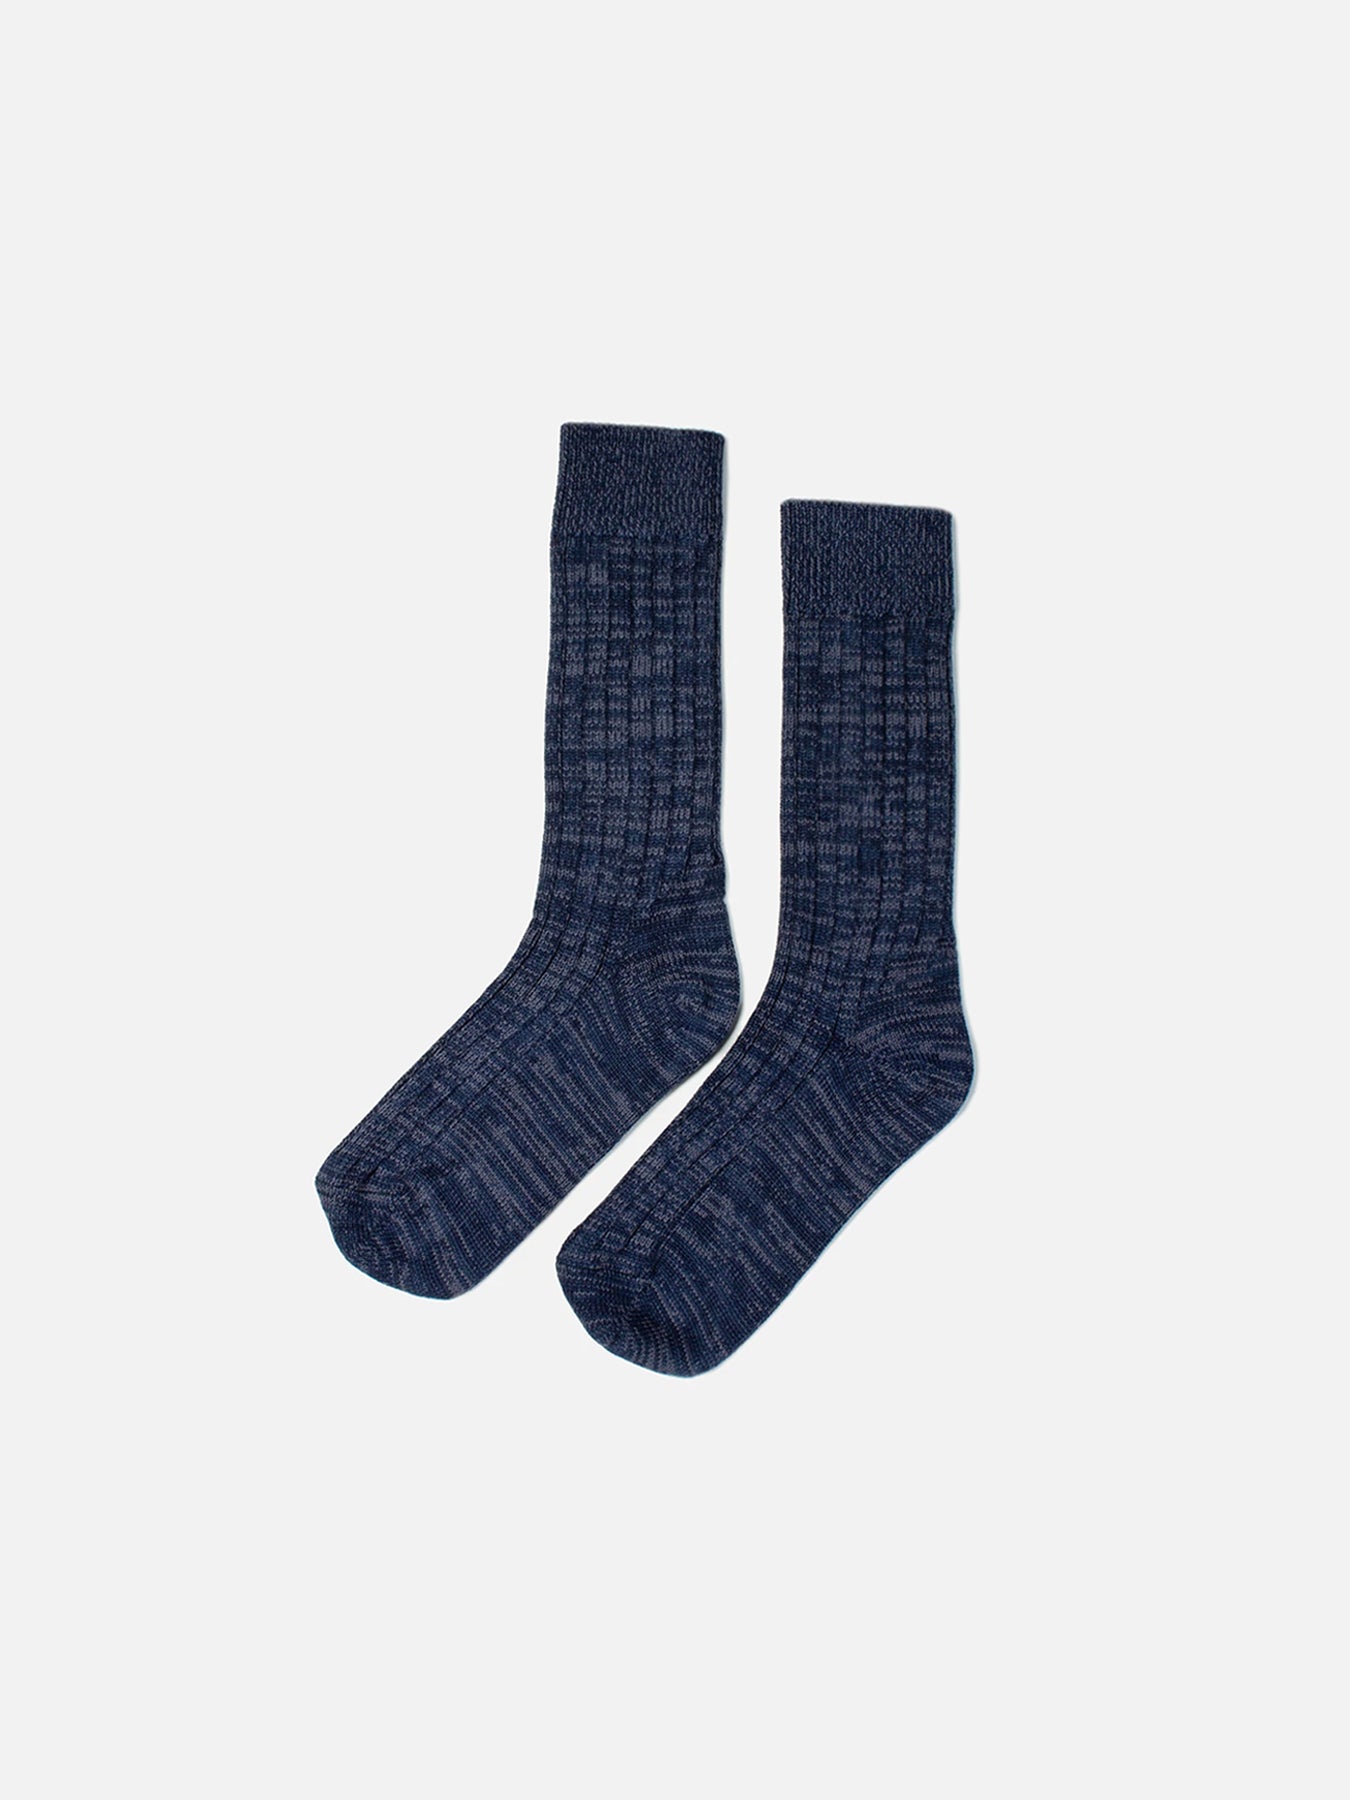 Hawick Cotton Socks in Navy Marl